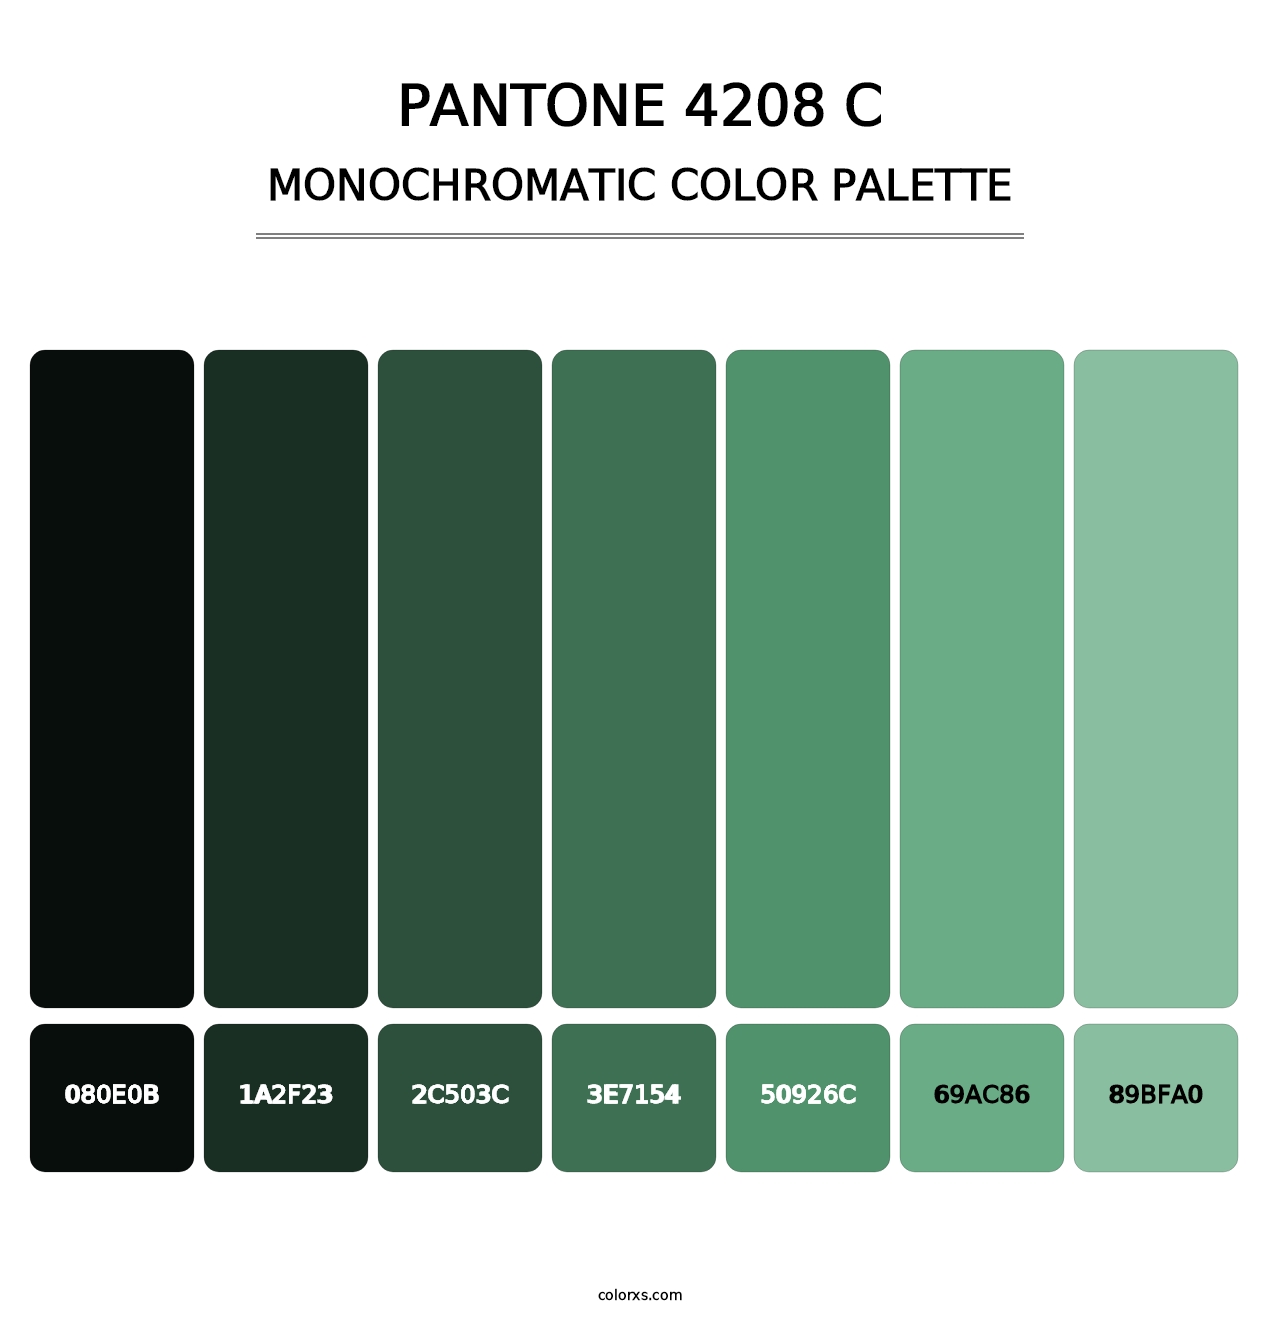 PANTONE 4208 C - Monochromatic Color Palette